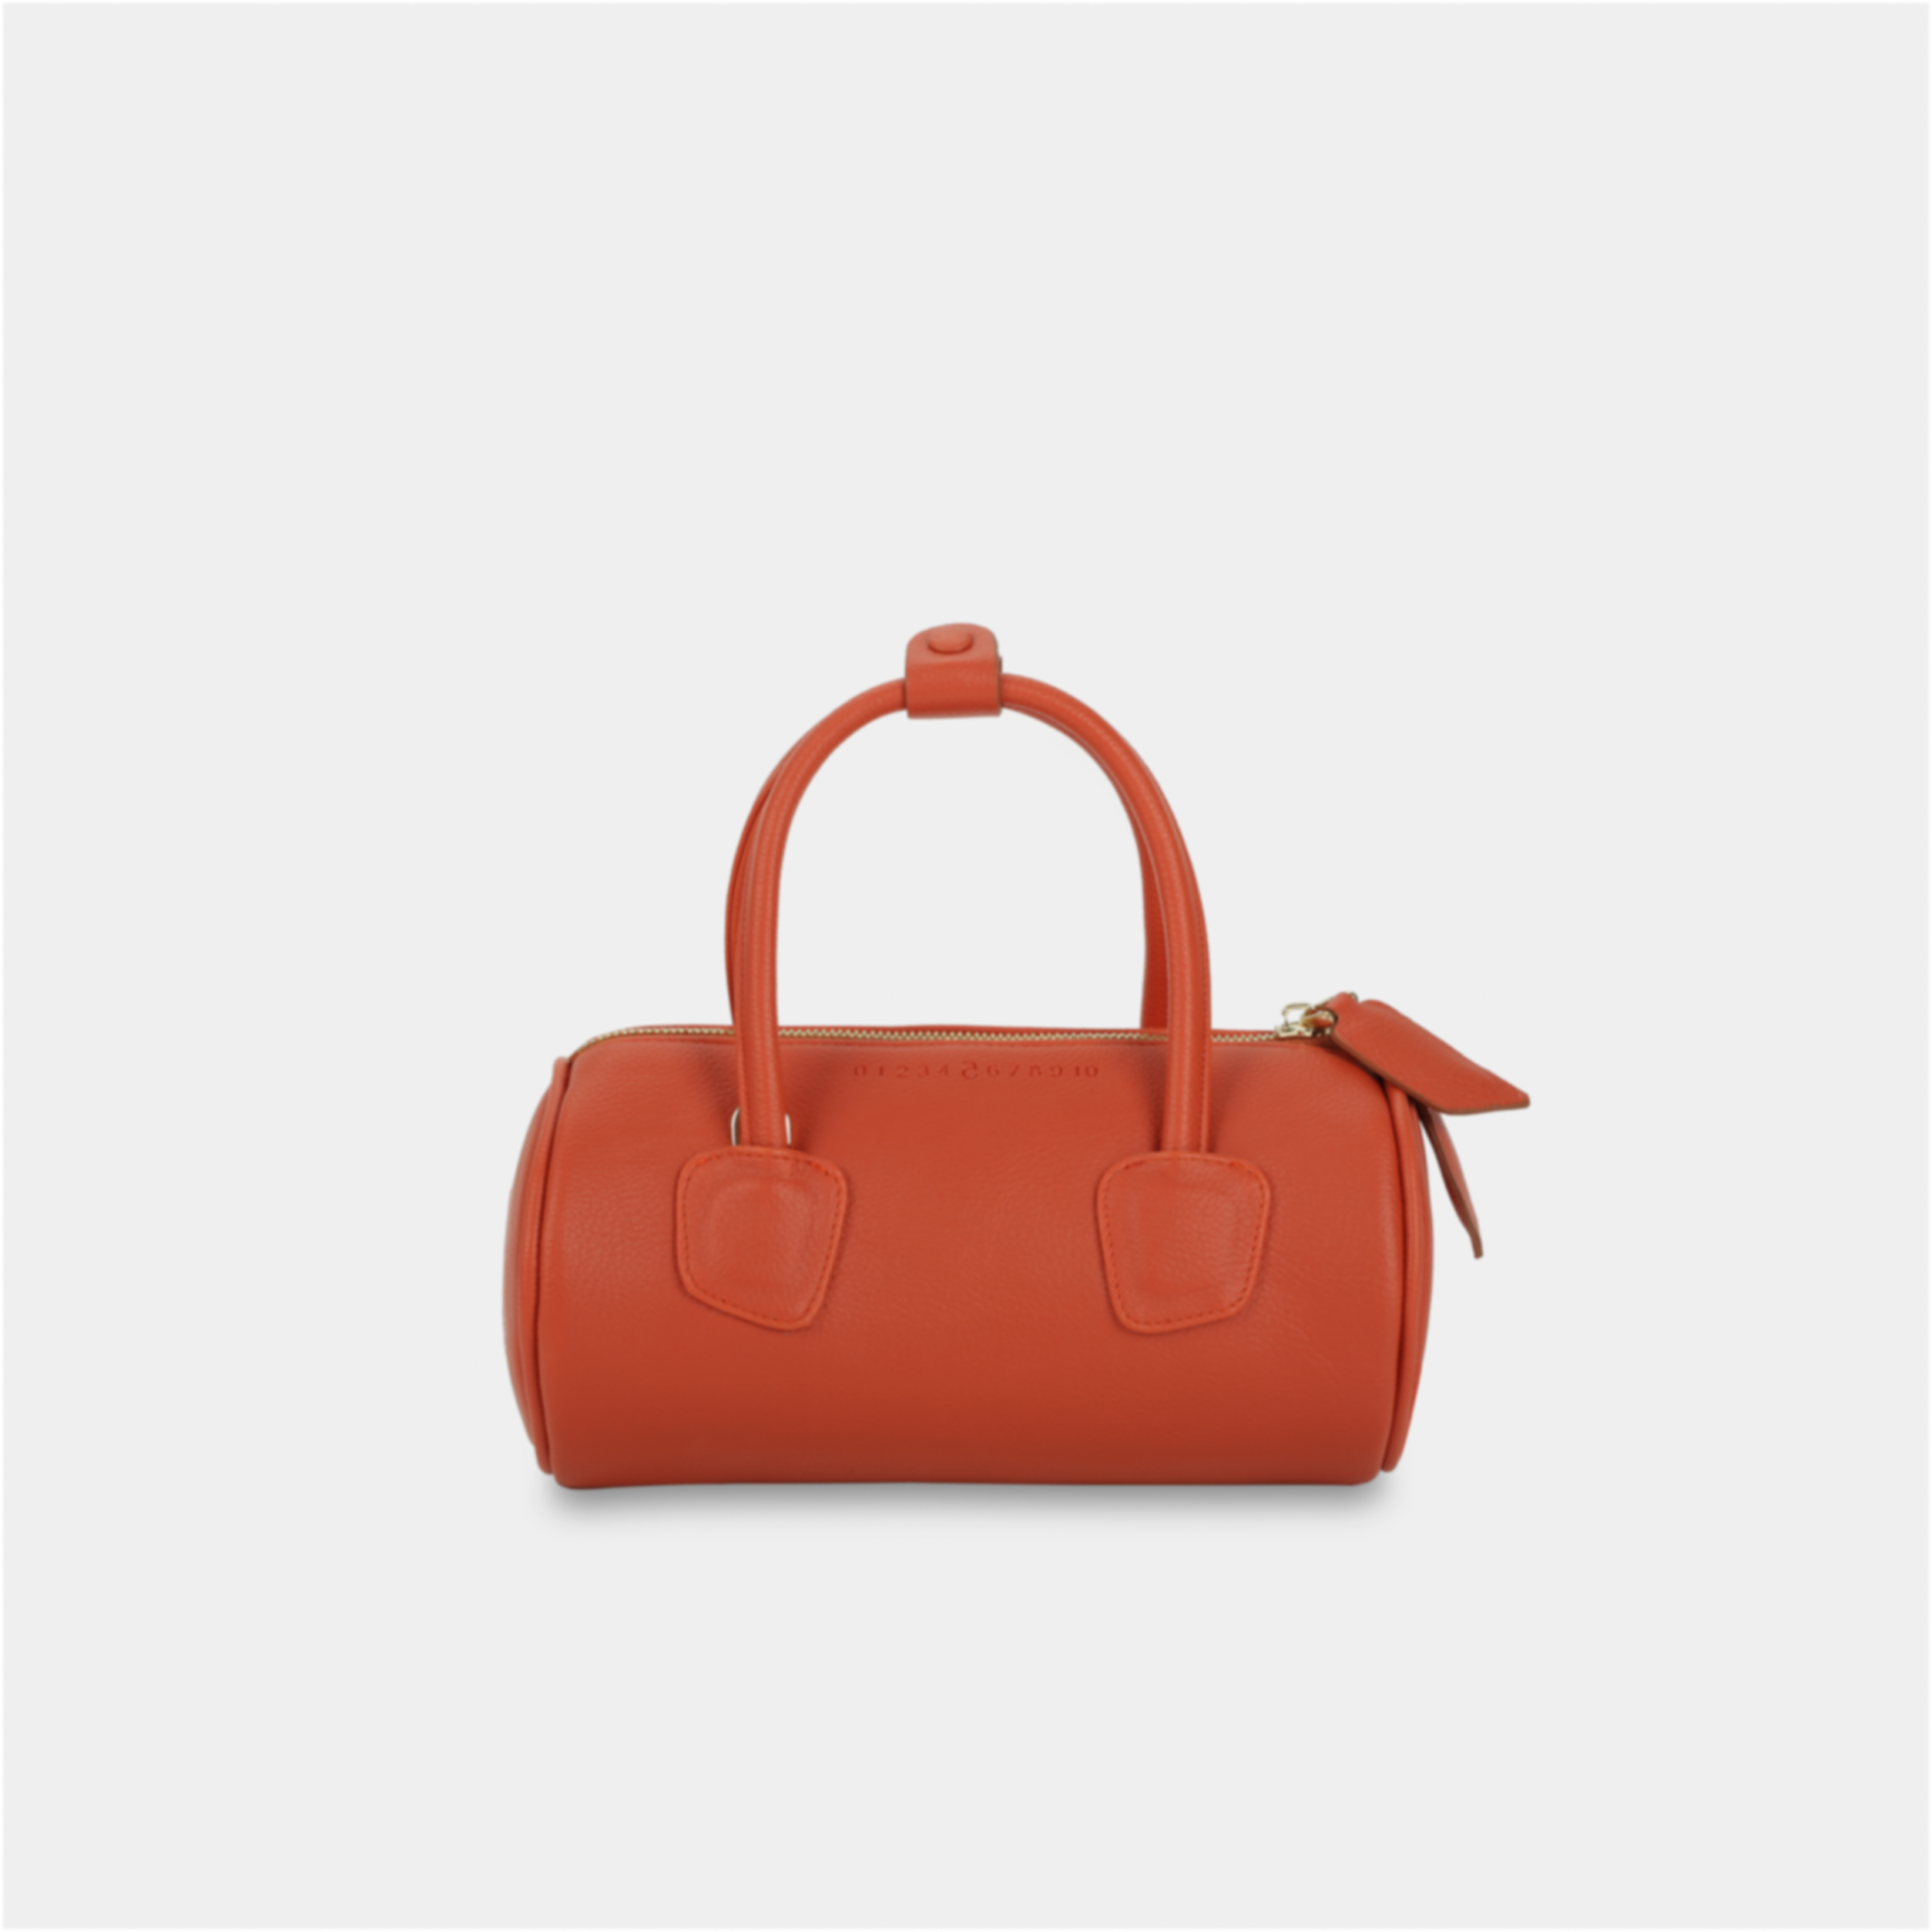 Túi xách ROLL màu cam đỏ